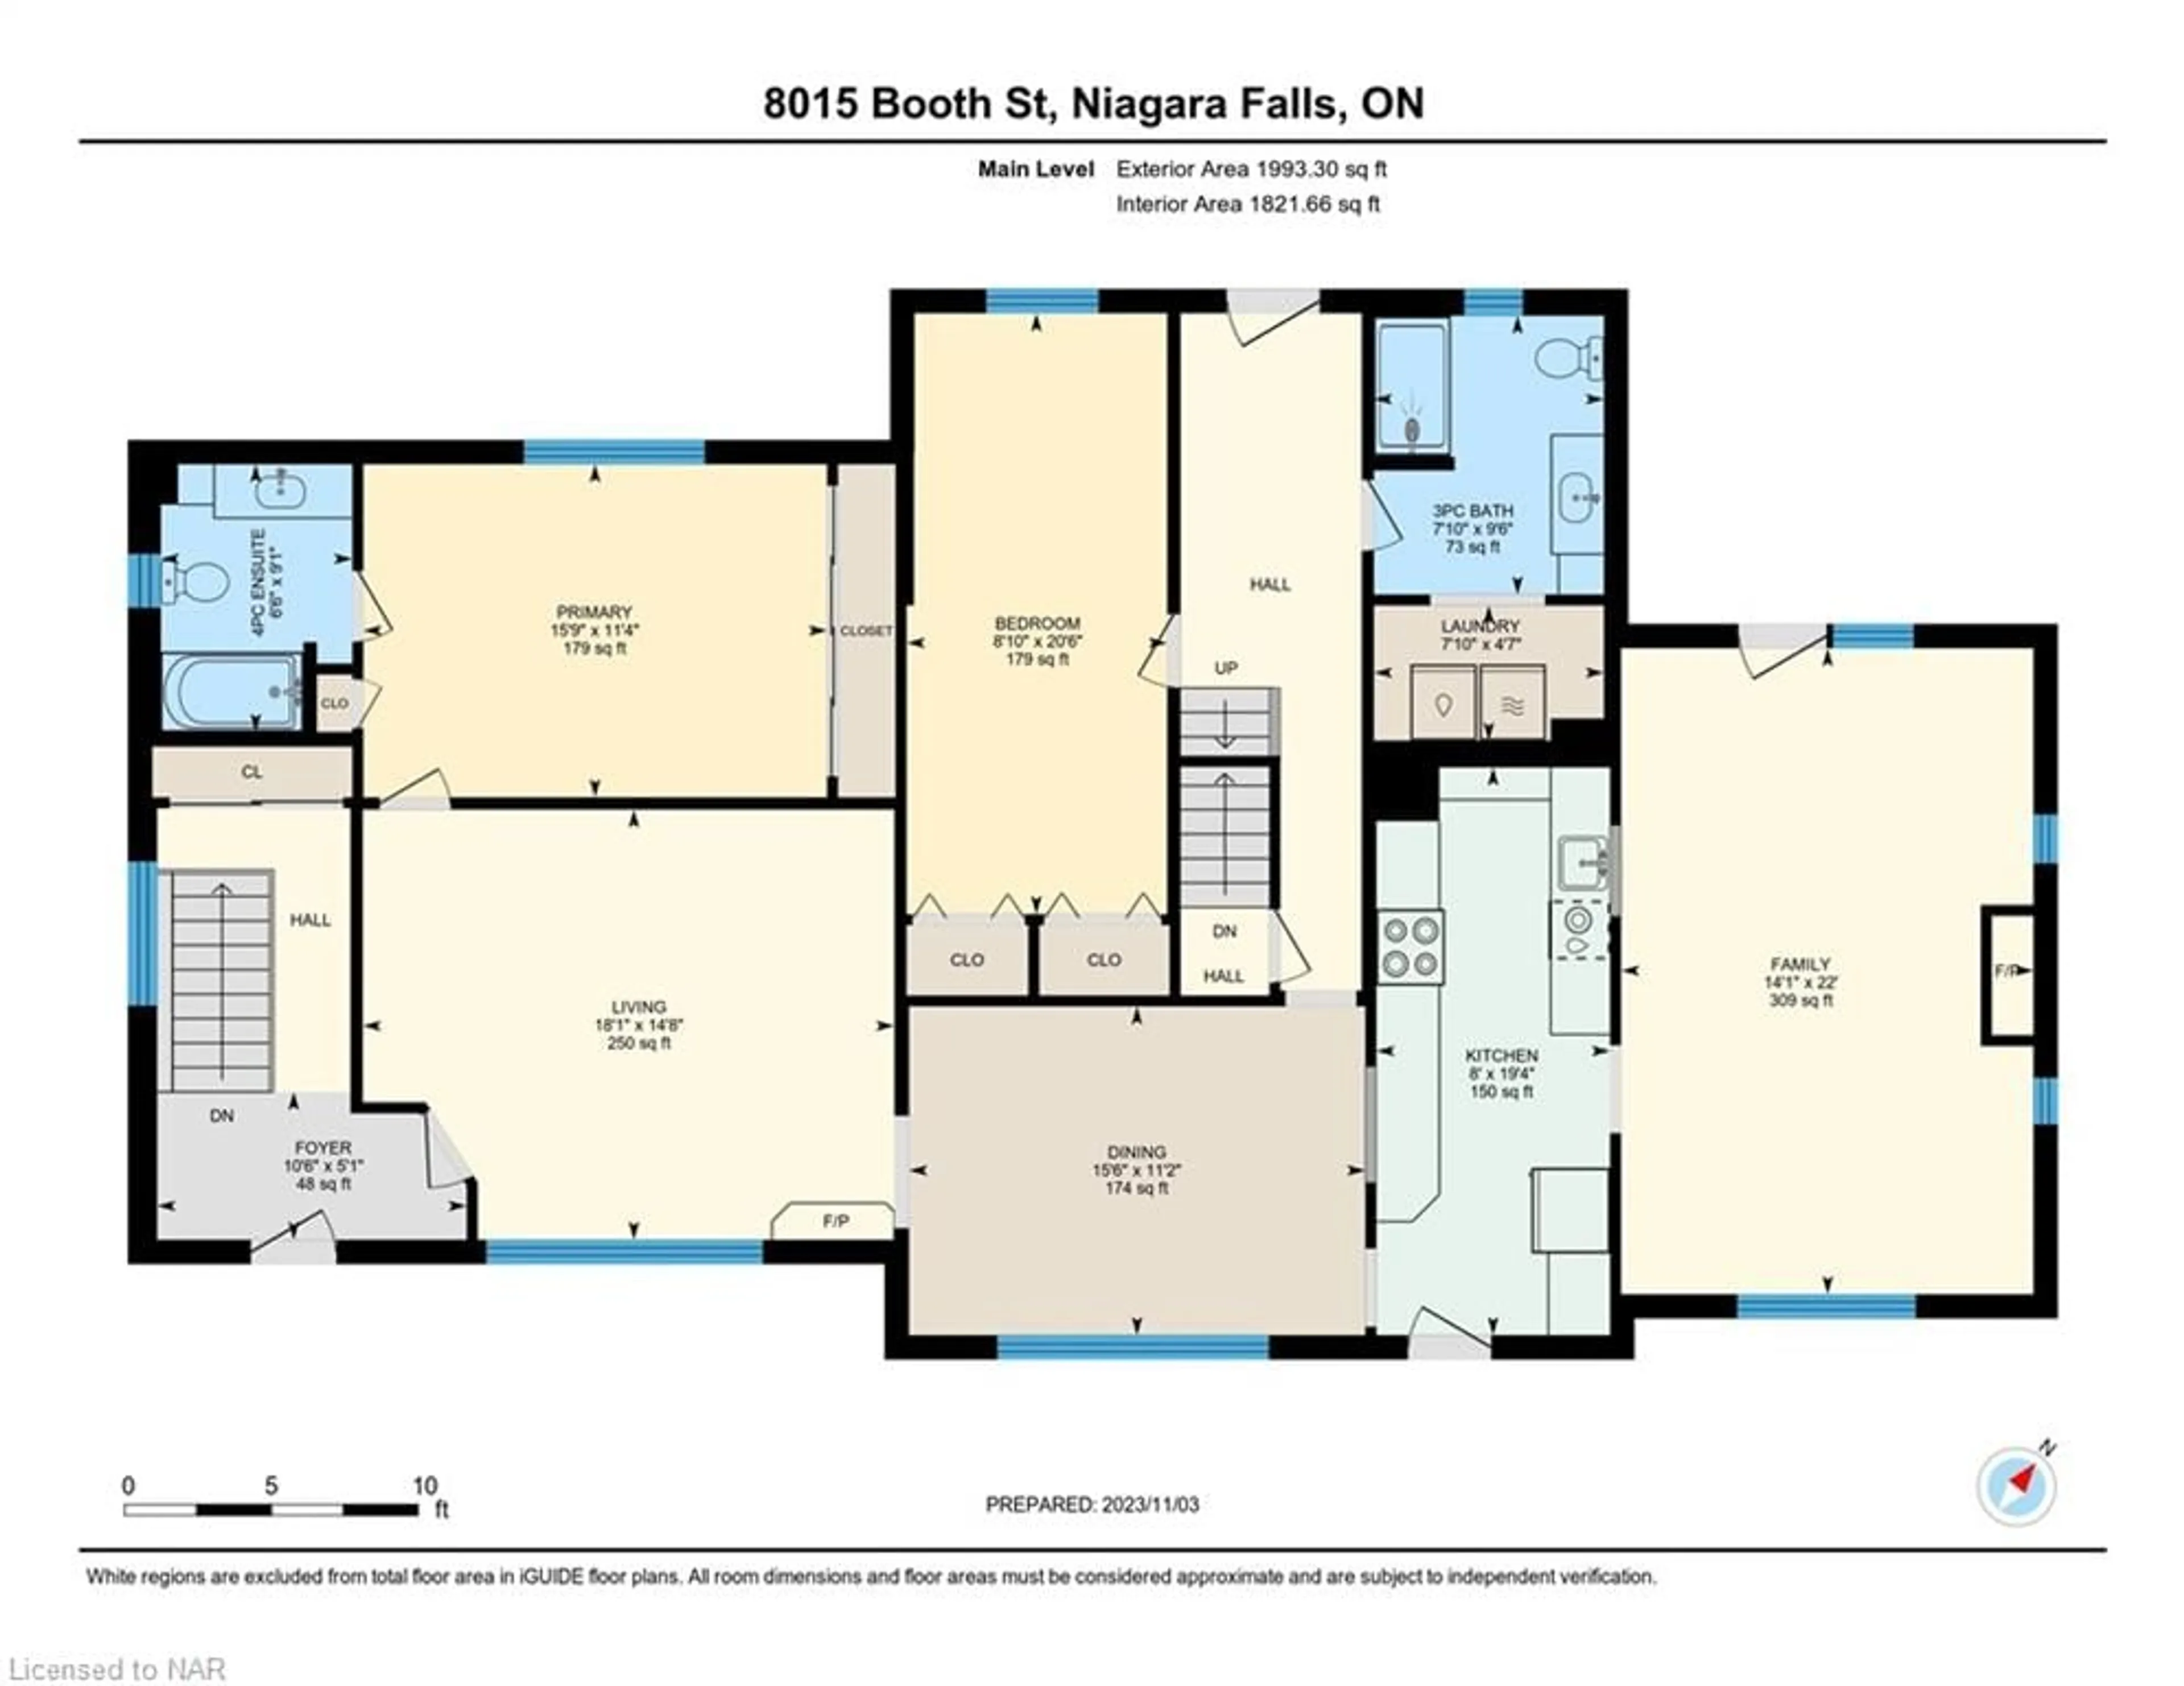 Floor plan for 8015 Booth St, Niagara Falls Ontario L2H 1E7